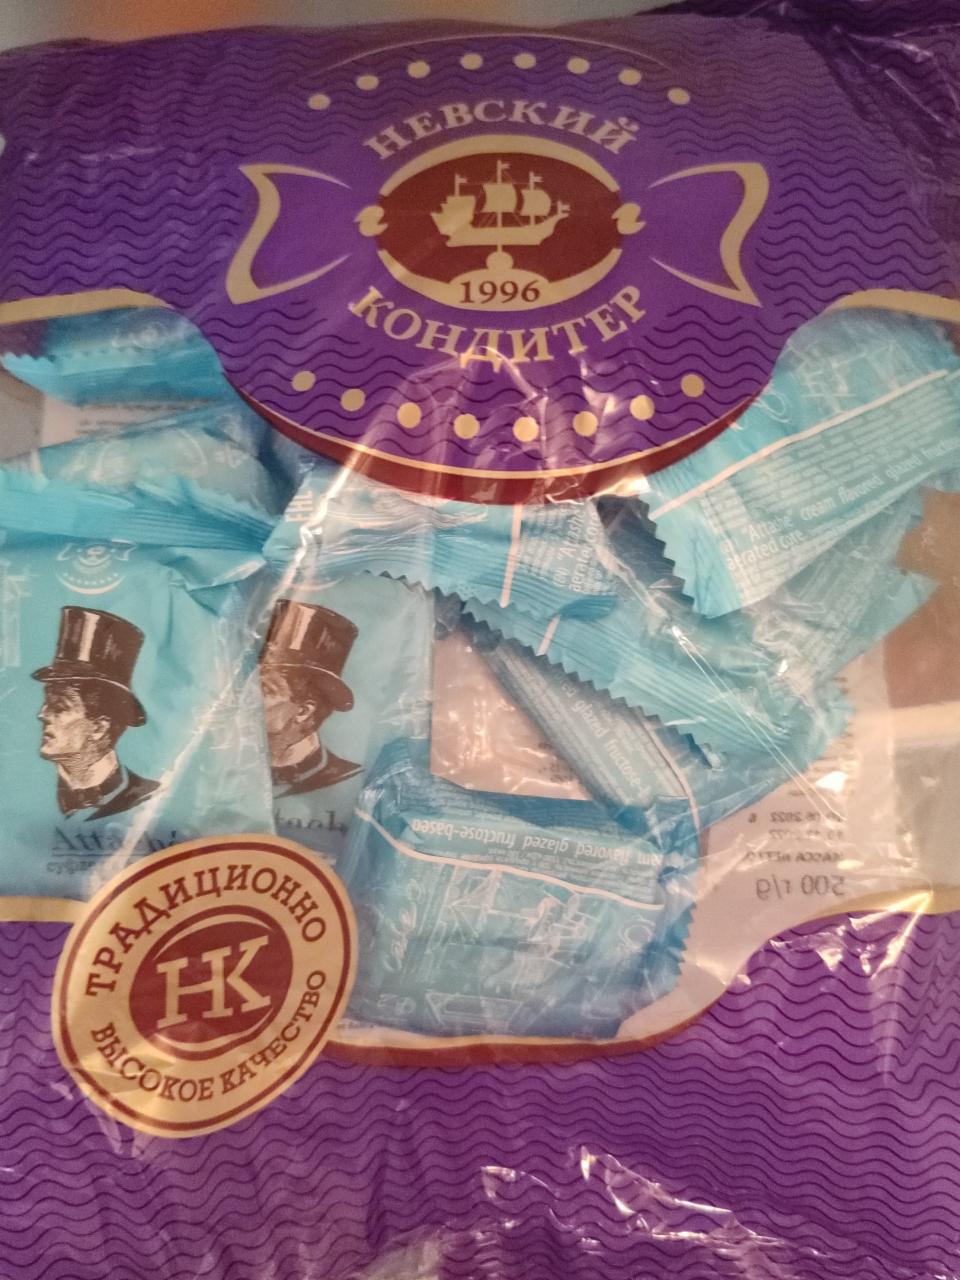 Фото - невский кондитер конфеты со сбивным корпусом на фруктозе, глазированные Атташе со сливочным вкусом Невский кондитер